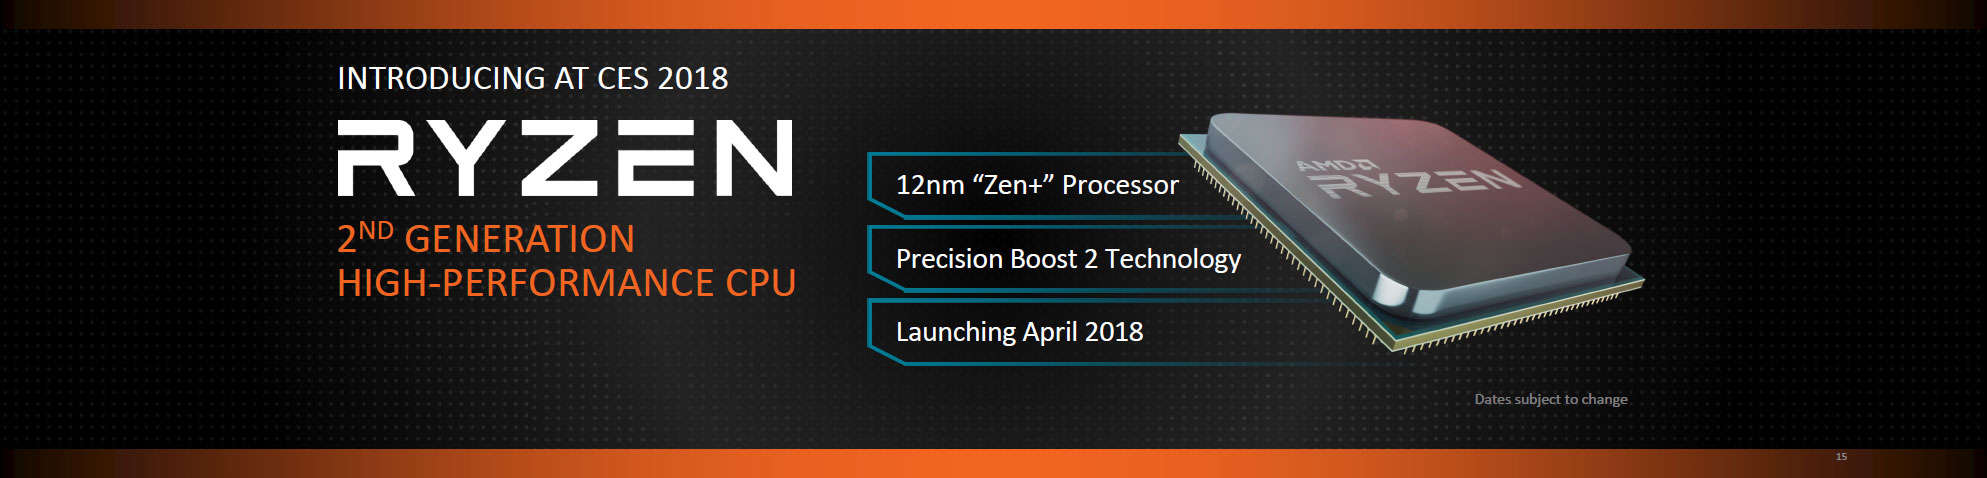 ryzen - Ufficiale Zen+ e piattaforma X470 ad Aprile 2018, anche Vega a 7nm nel corso dell'anno